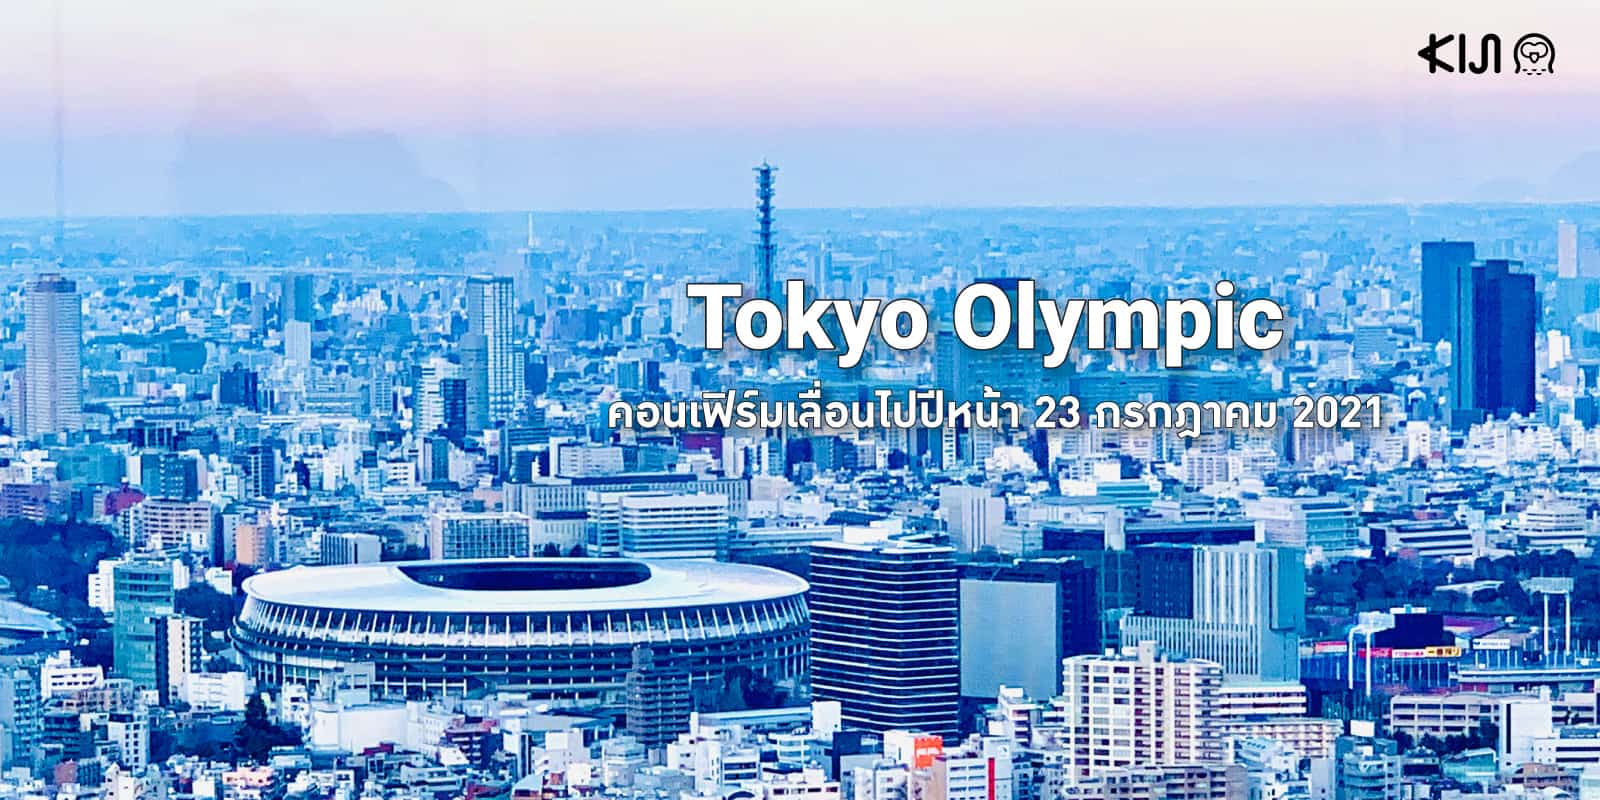 โตเกียวโอลิมปิก (Tokyo Olympic Games 2020) เลื่อนวัน